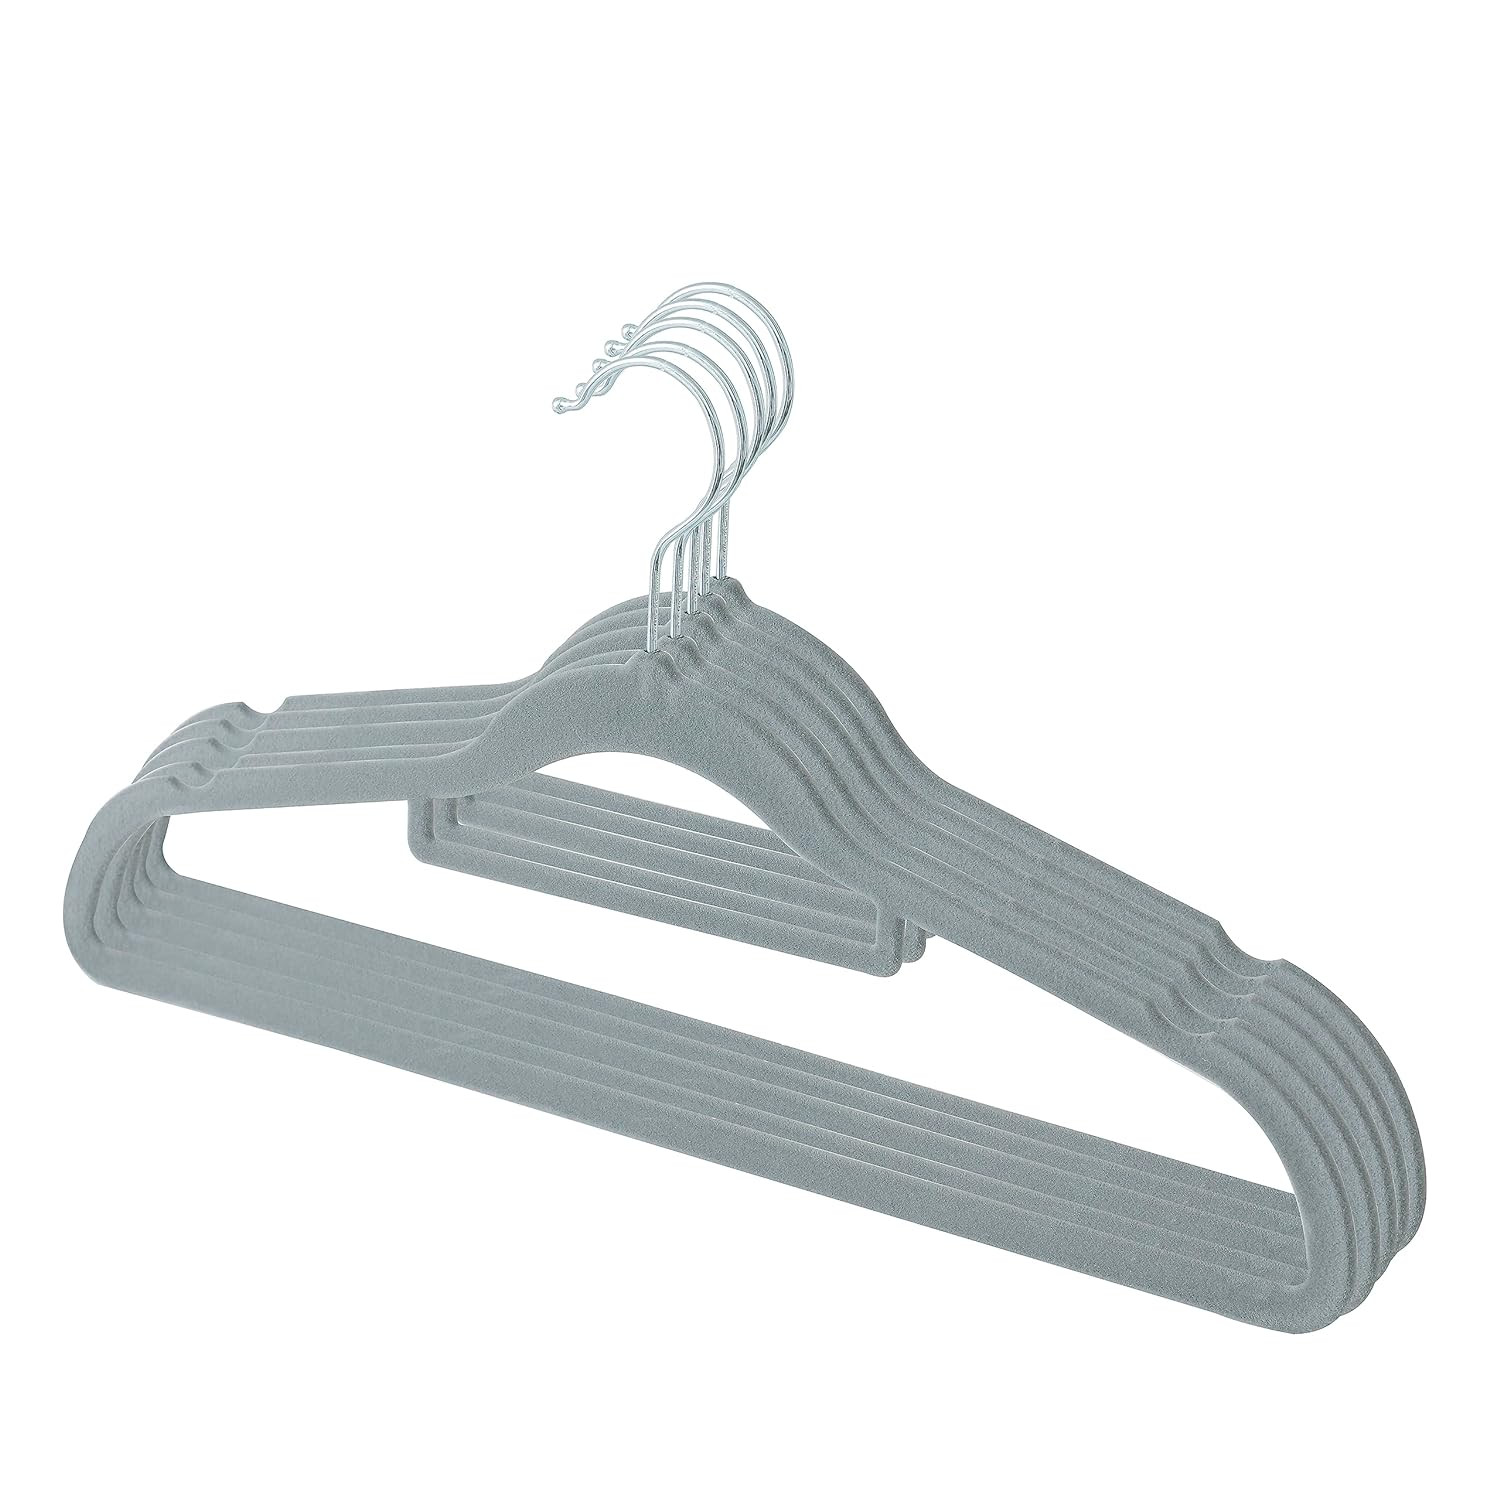 Kuber IndustriesVelvet Cloth Hanger Set of 5 With Chromed Plated Steel Hook (Grey)